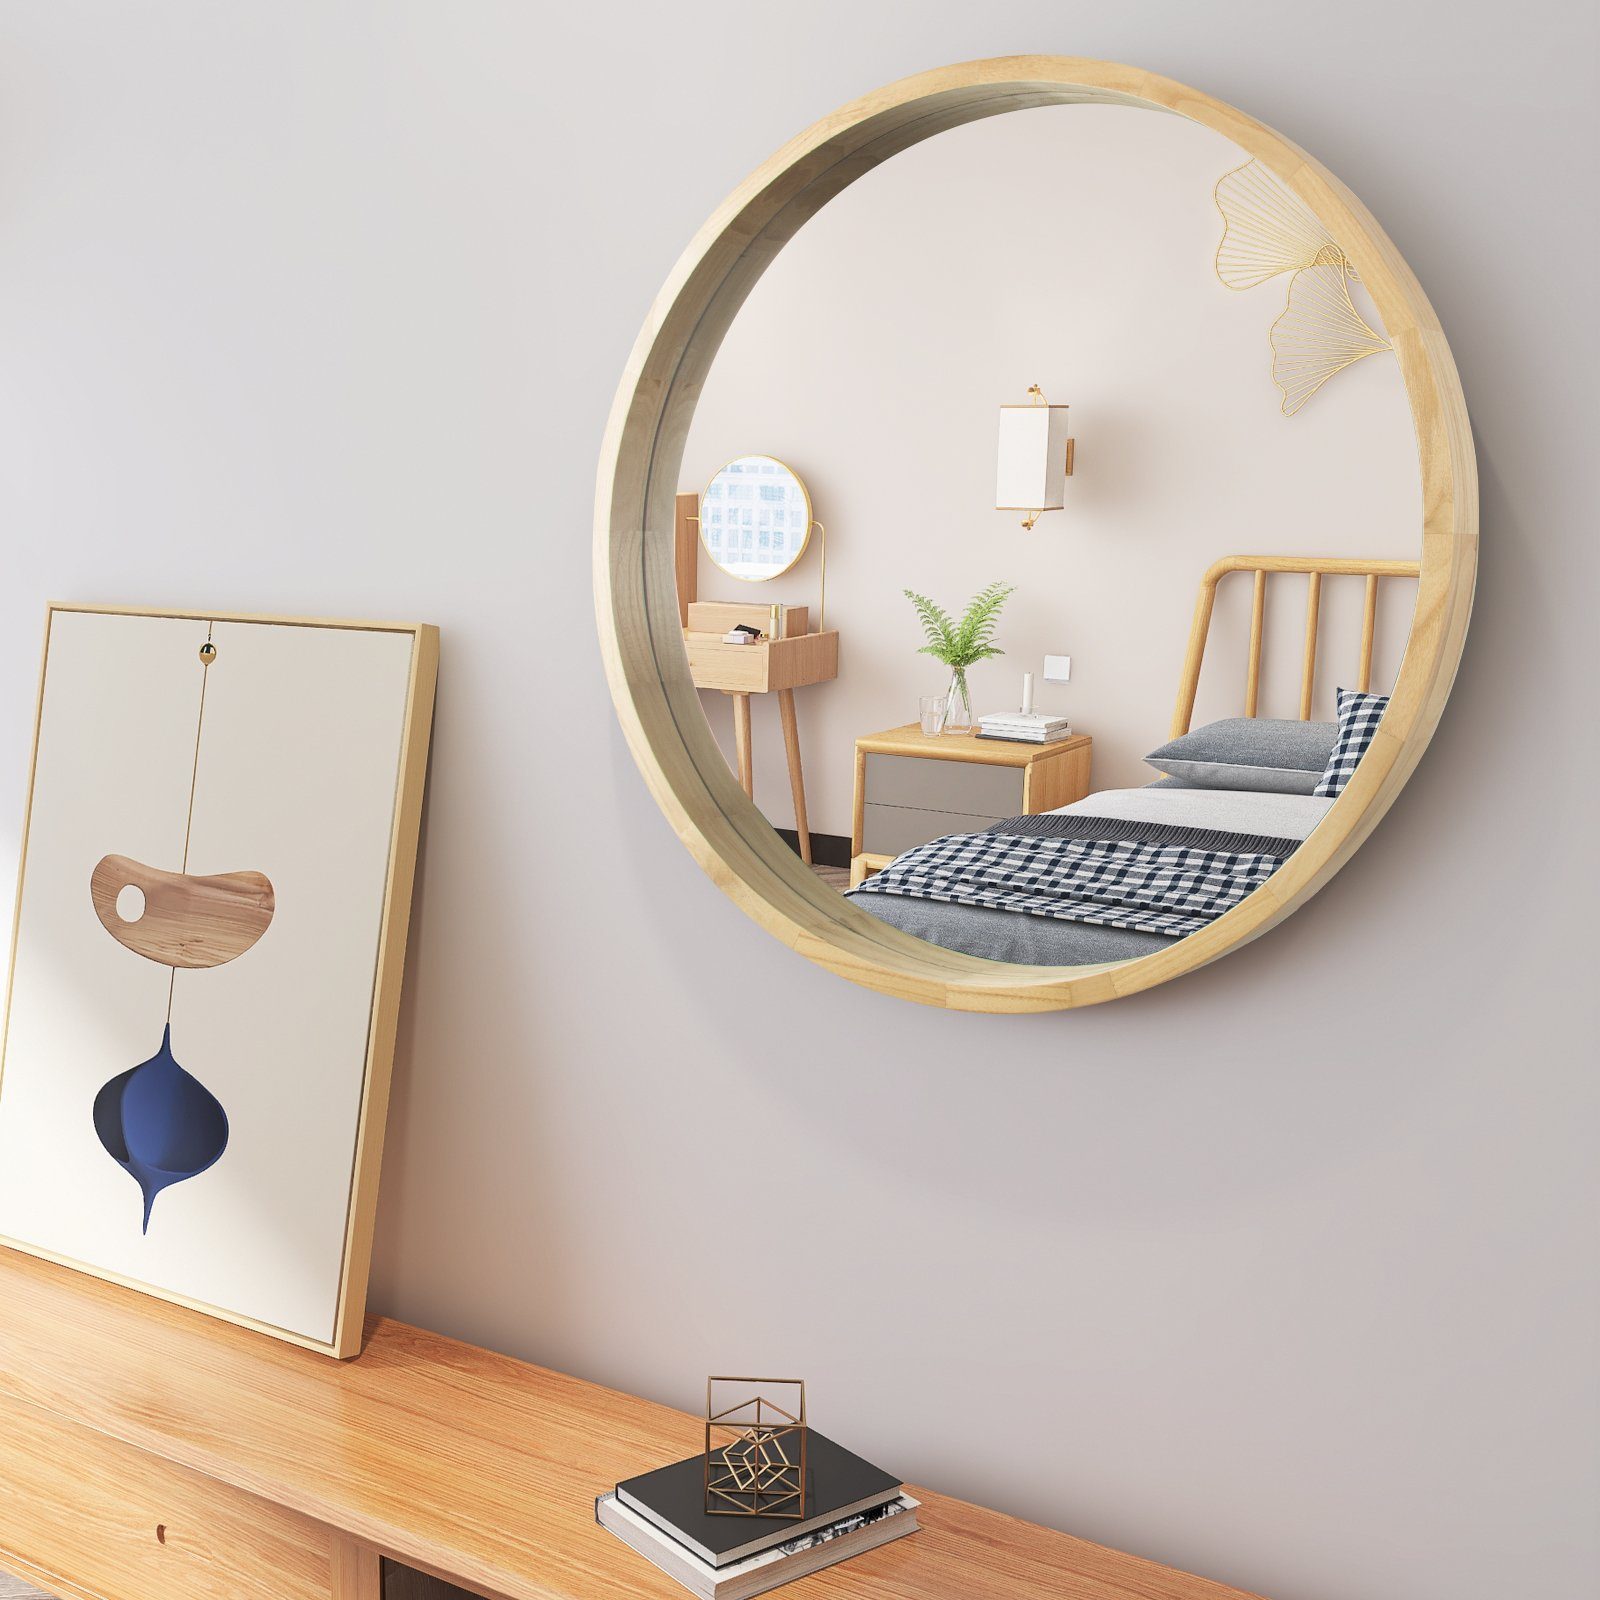 Flieks Badspiegel, Rund Spiegel mit Rahmen aus Holz in Oak, Wandspiegel  Schminkspiegel aus Glas 76.2cm online kaufen | OTTO